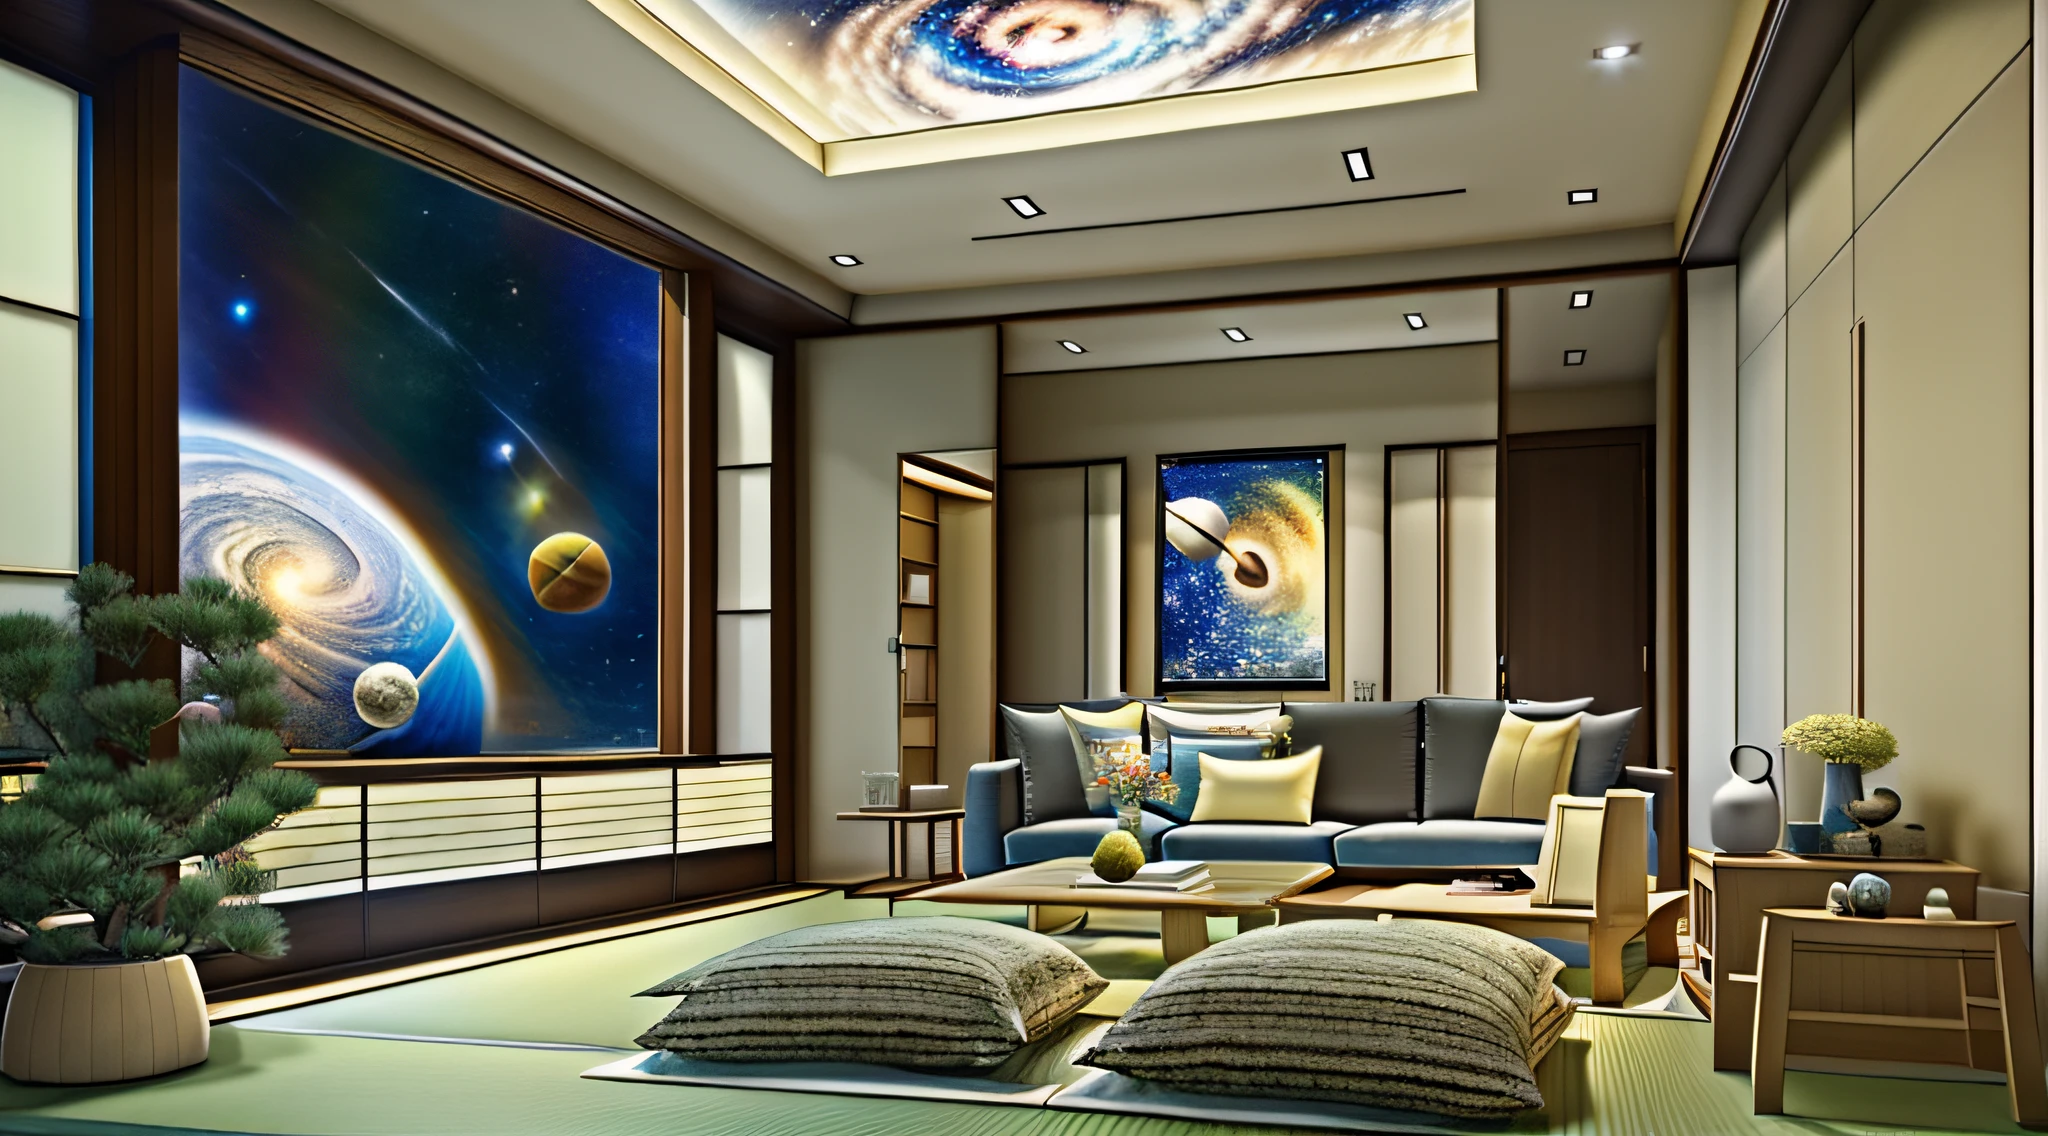 Design moderno de sala de estar、O piso e o teto são transparentes para que você possa ver o espaço sideral.、Um estilo japonês、jpn、espaço cósmico、obra-prima、realista、８K、lei